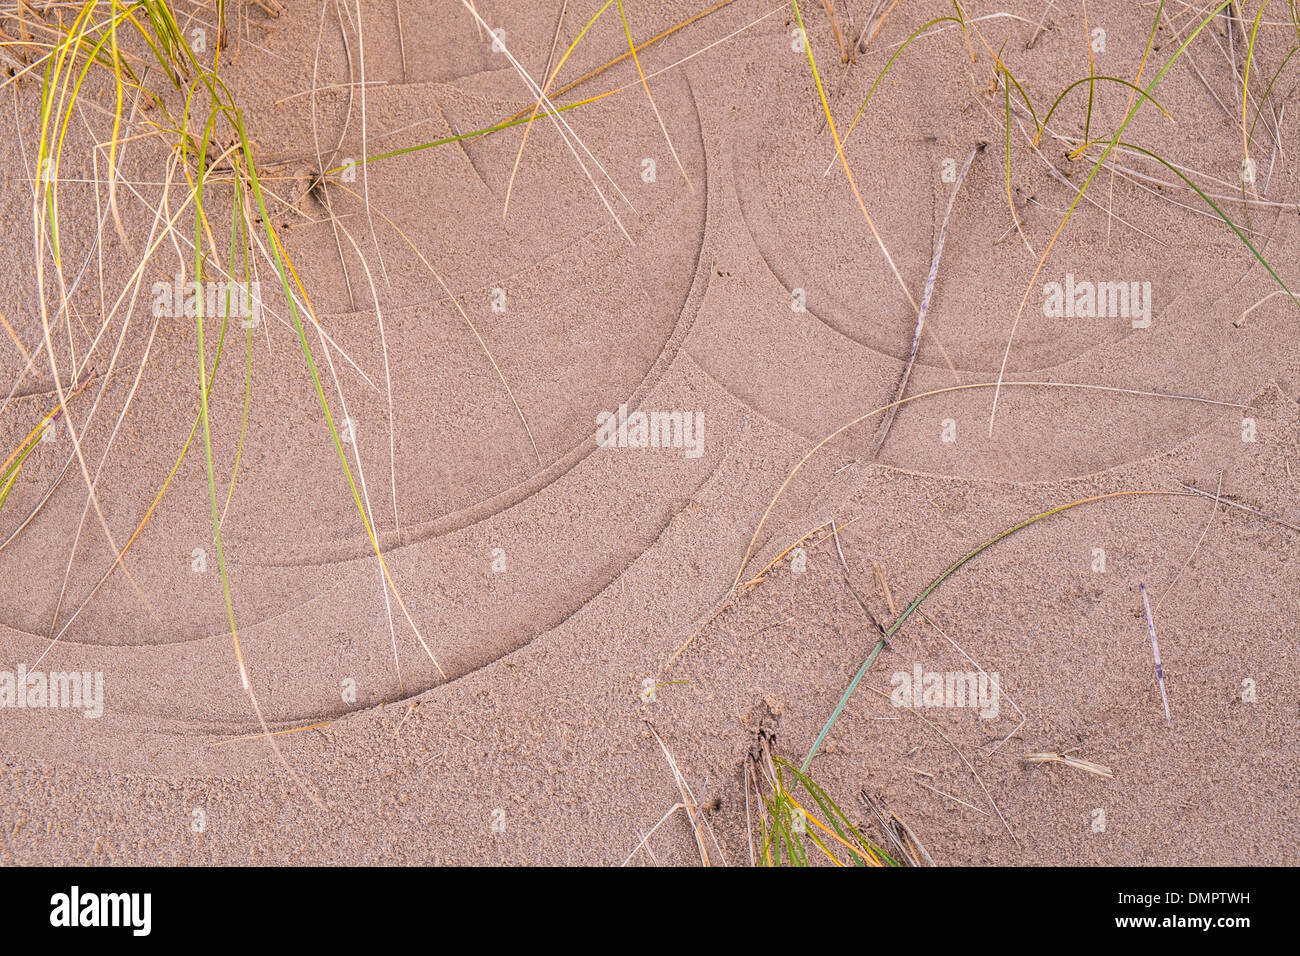 Le linee tracciate sulla sabbia da Marram erba, Ammophila arenaria. Foto Stock